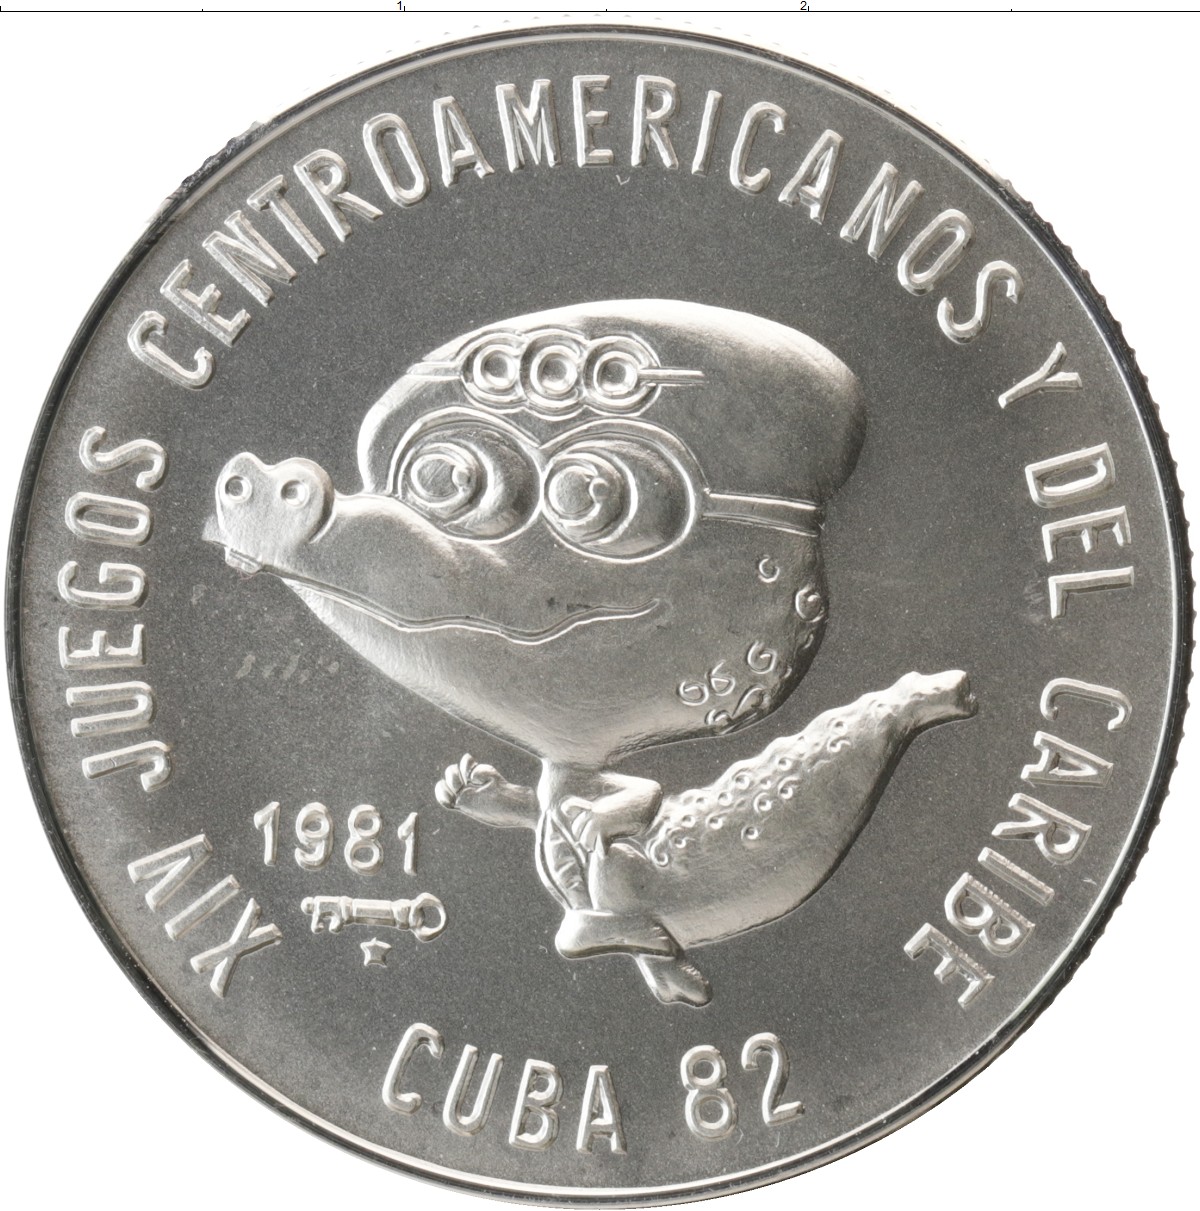 Кубинская монета. 5 Песо Куба 1981. Монеты Кубы. Кубинские монеты. Песо Куба монета.